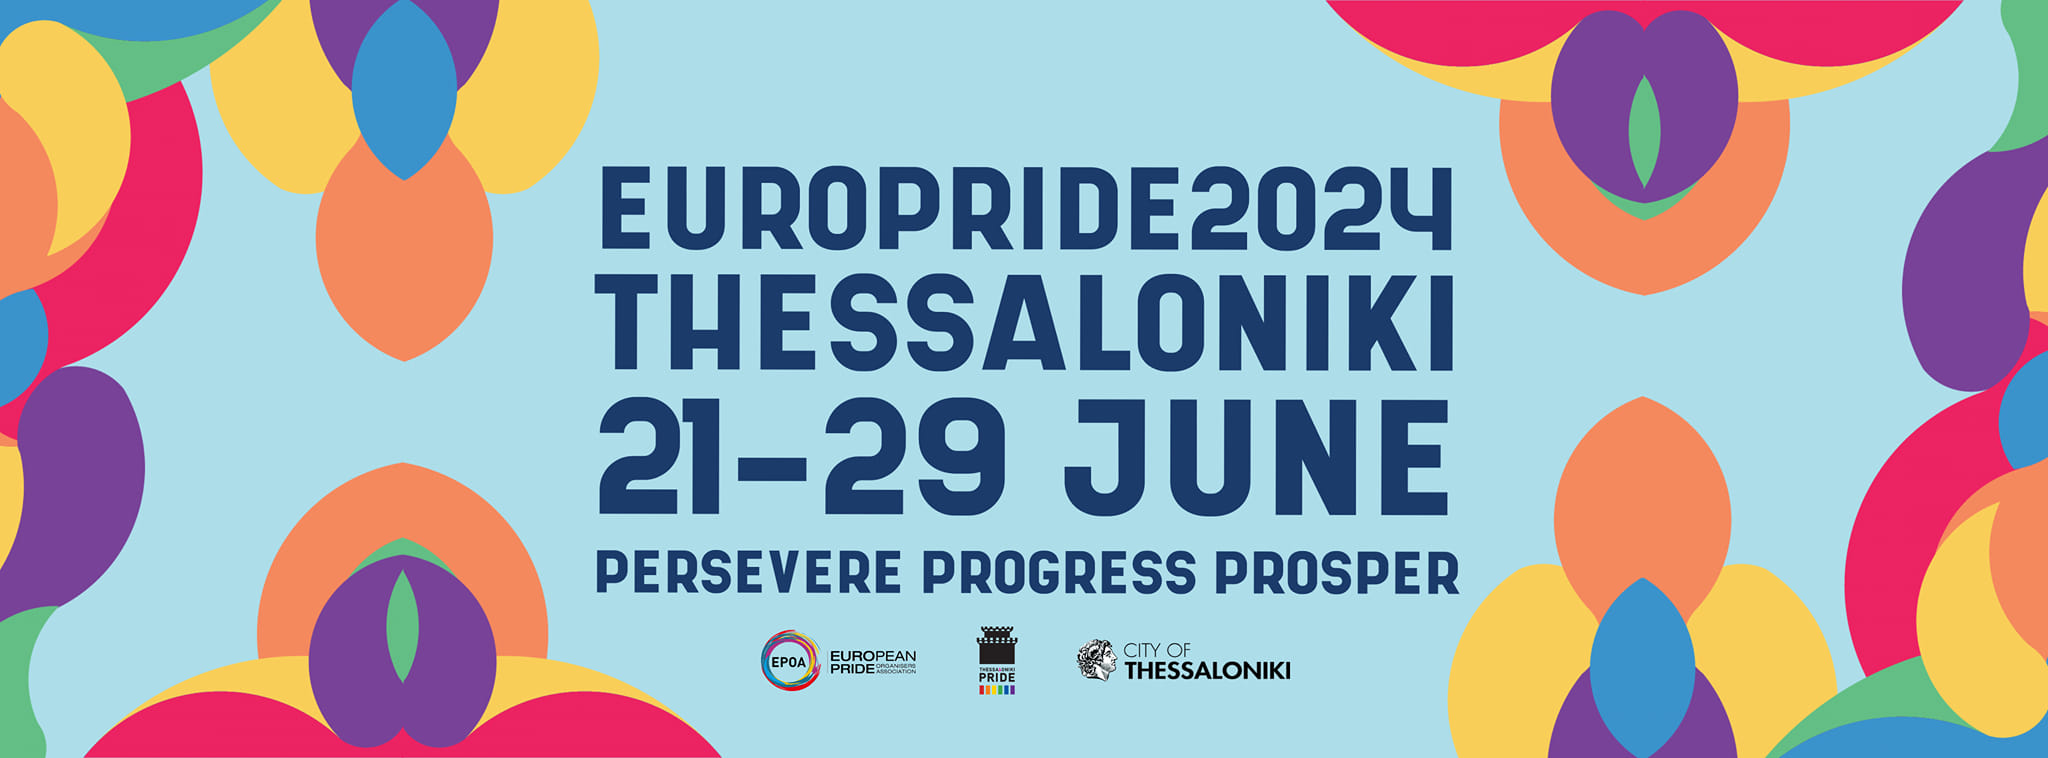 Στη Θεσσαλονίκη για μία εβδομάδα το φετινό ευρωπαϊκό Pride